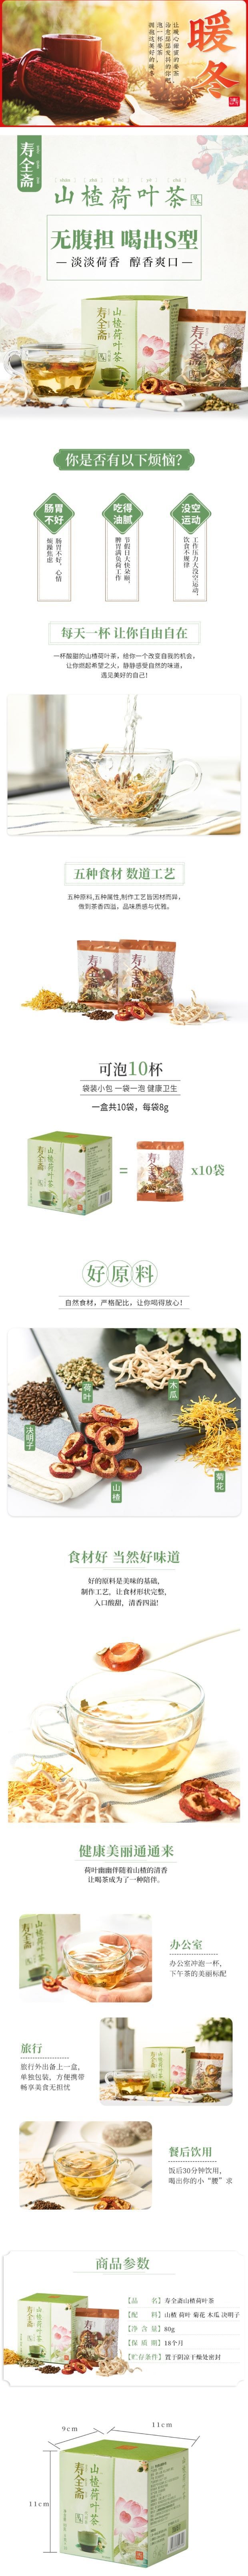 【中国直邮】寿全斋 山楂荷叶茶 80g/盒